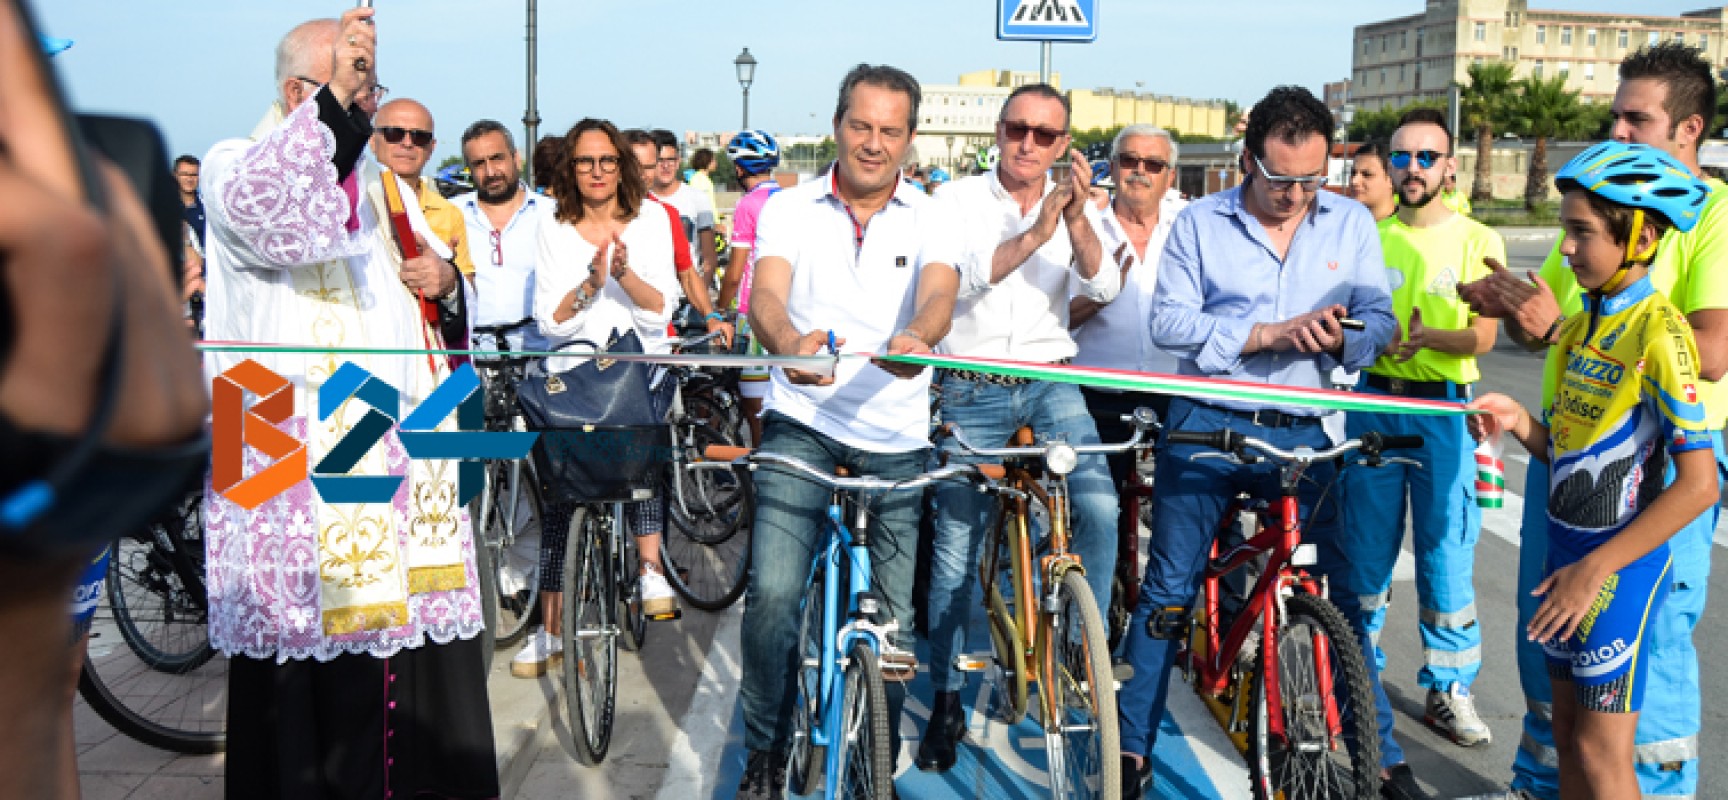 Inaugurata la pista ciclabile, Spina: “Vero progetto di mobilità sostenibile” / FOTO